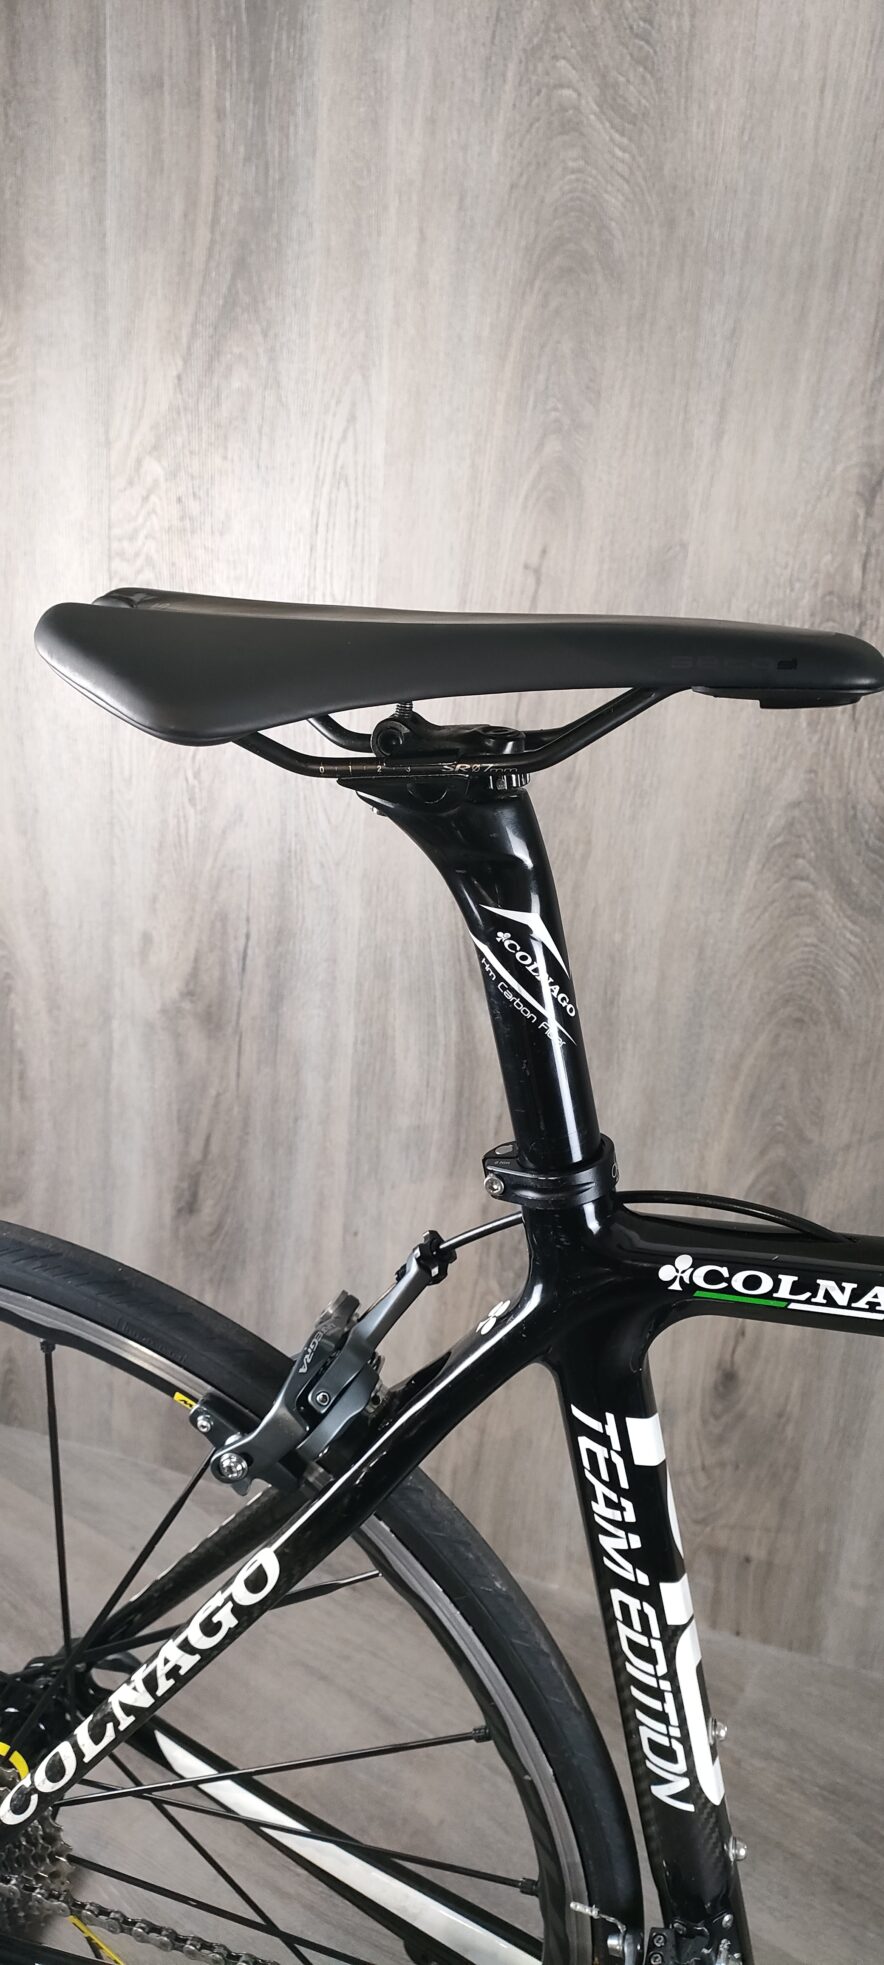 Colnago M10 S Team Edition - Bicicletta da corsa usata